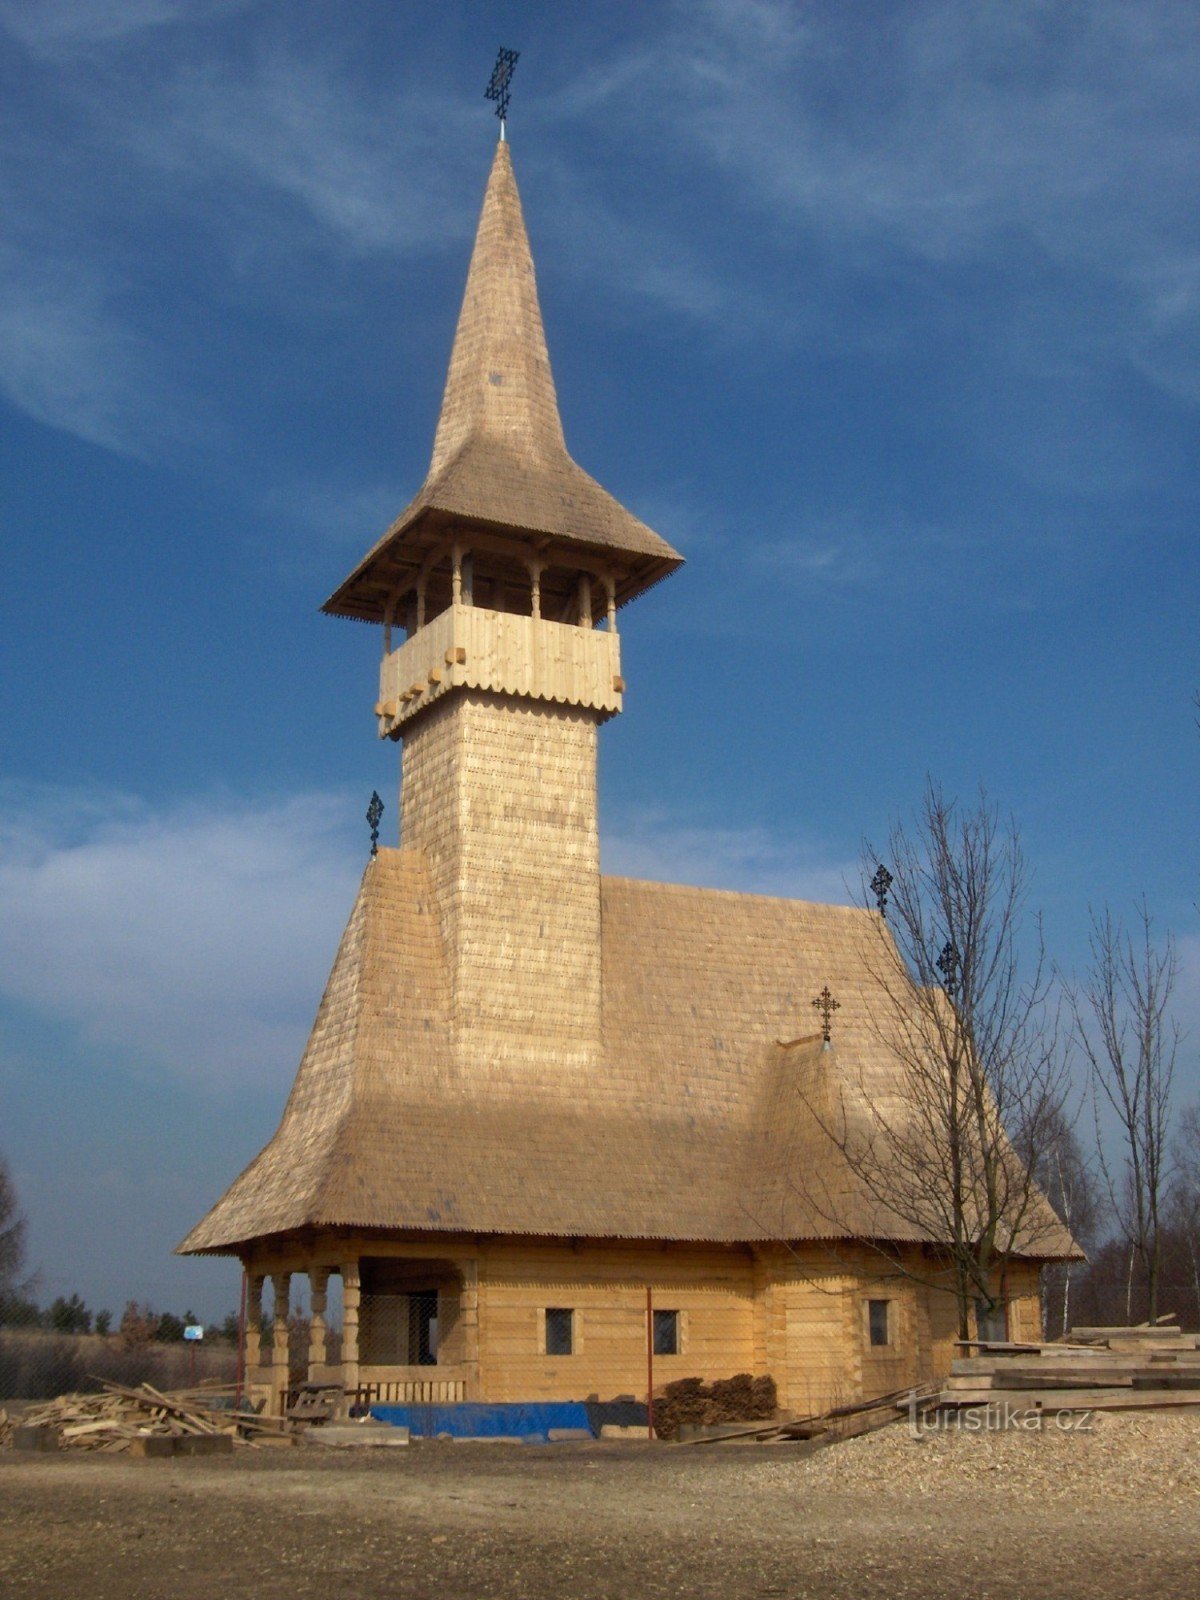 Pravoslavna cerkev, februar 2011